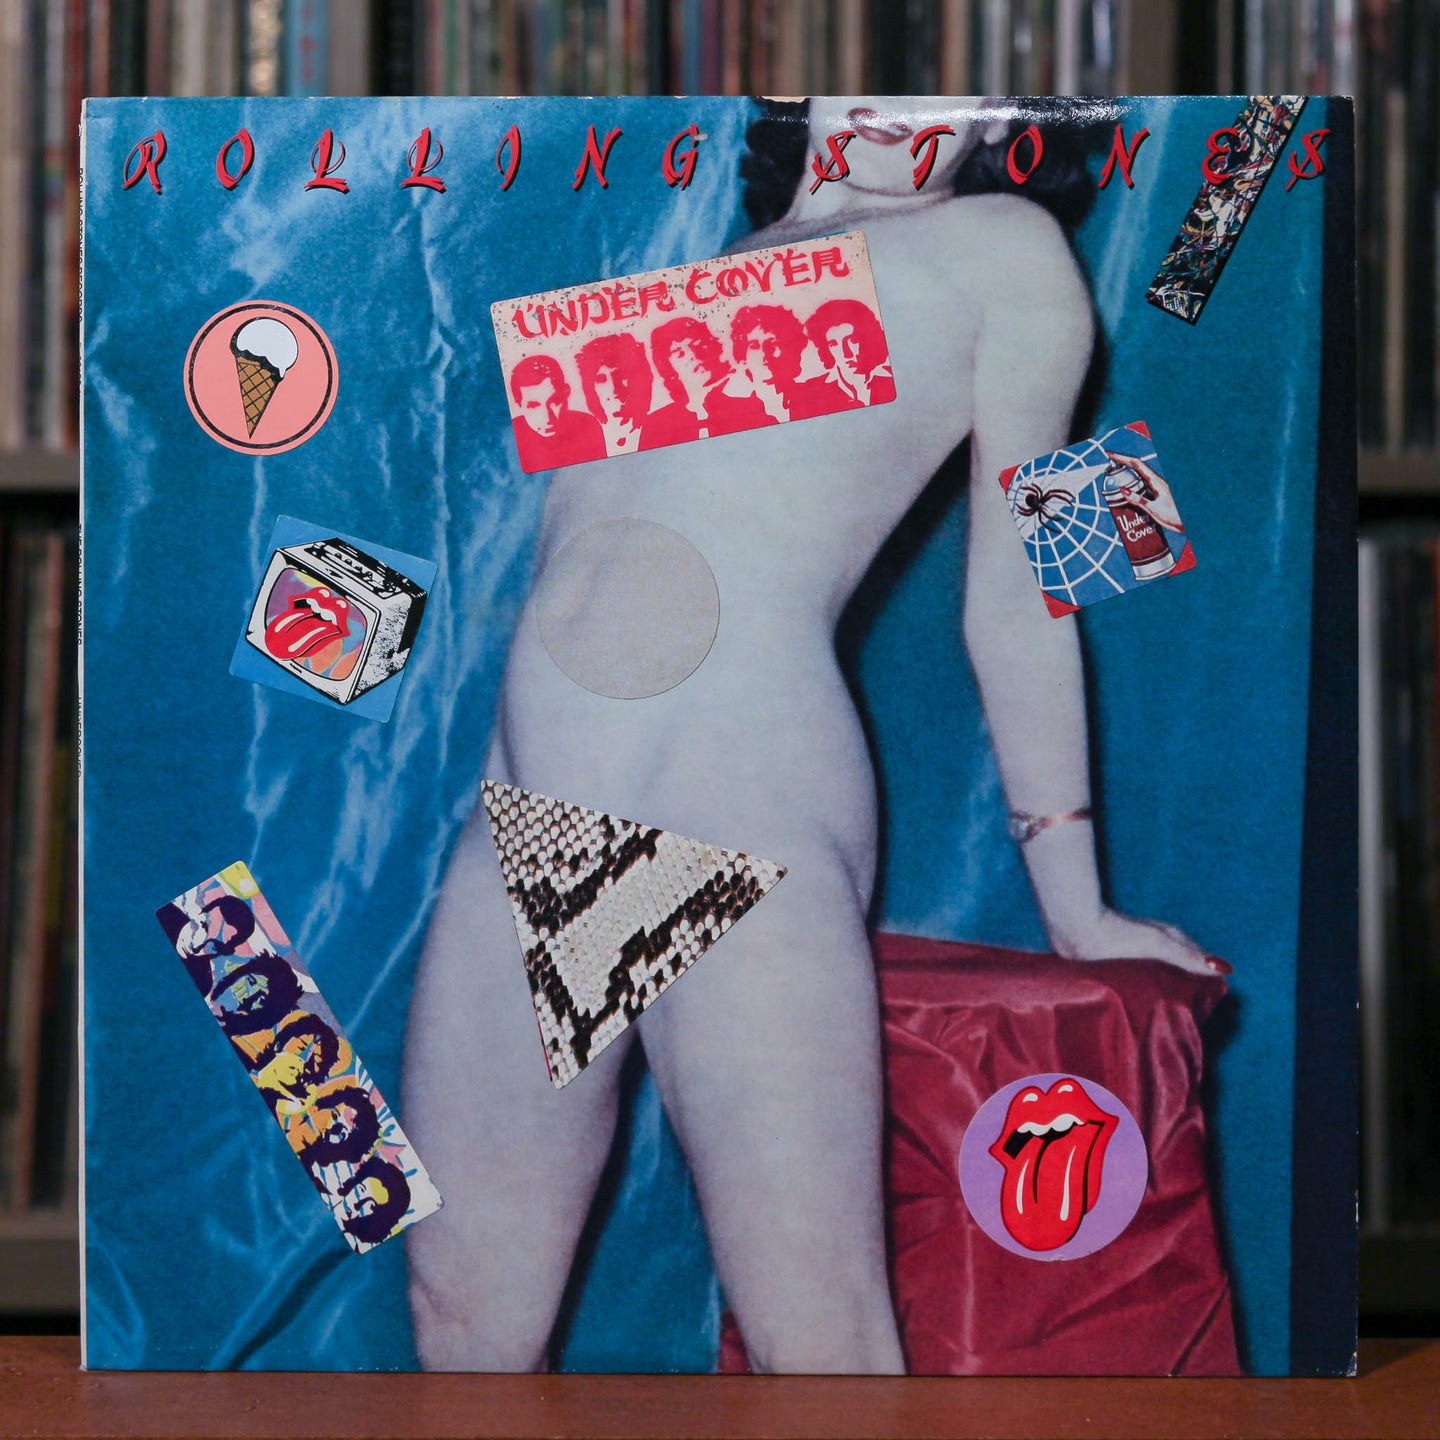 Rolling Stones 4 Album Bundle - Under Cover, Undercover 12